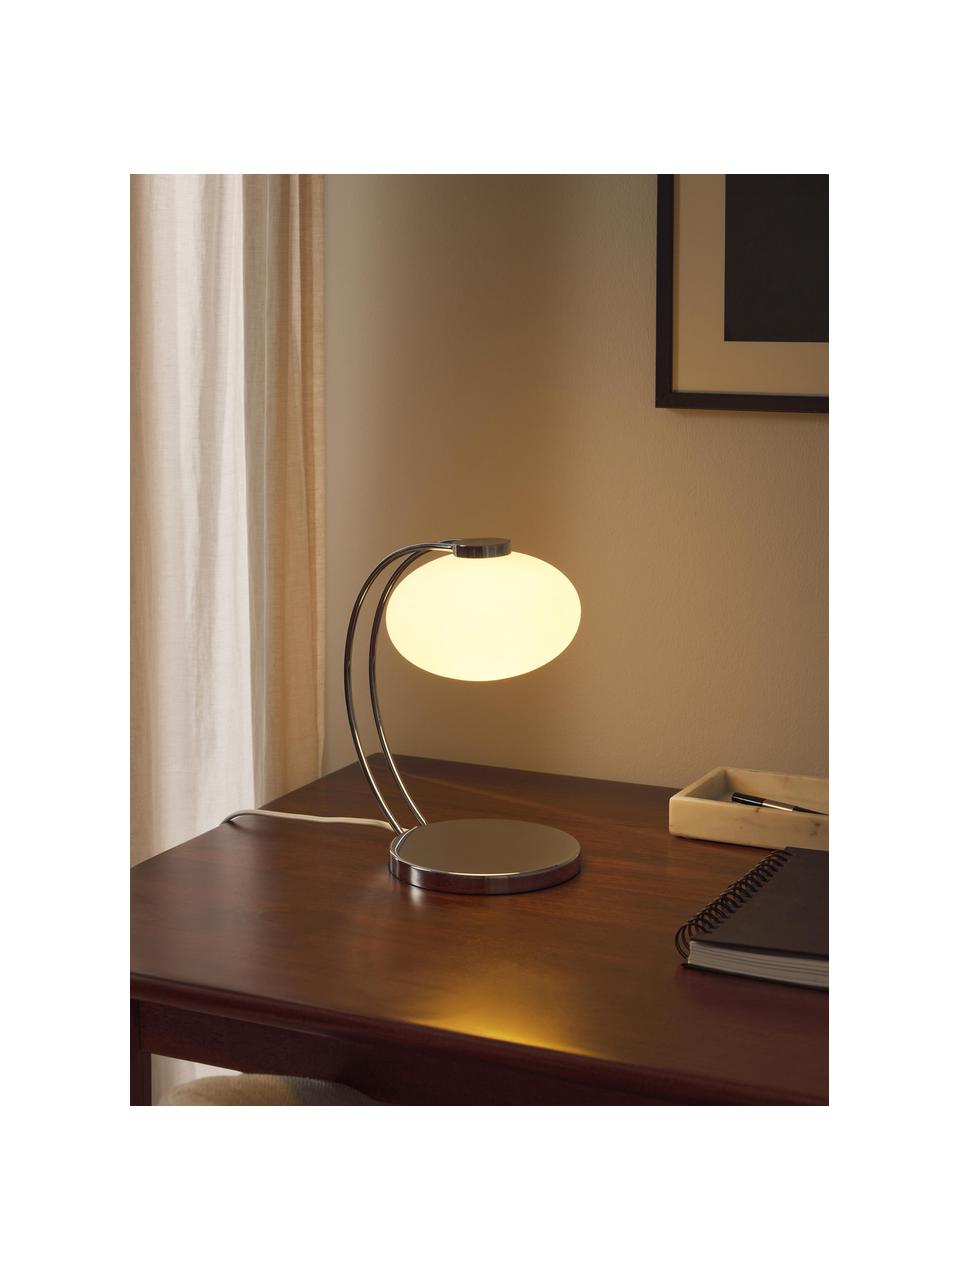 Lámpara de mesa pequeña Fay, Pantalla: vidrio opalino, Estructura: metal recubierto, Cable: cubierto en tela, Cromo, An 15 x Al 25 cm